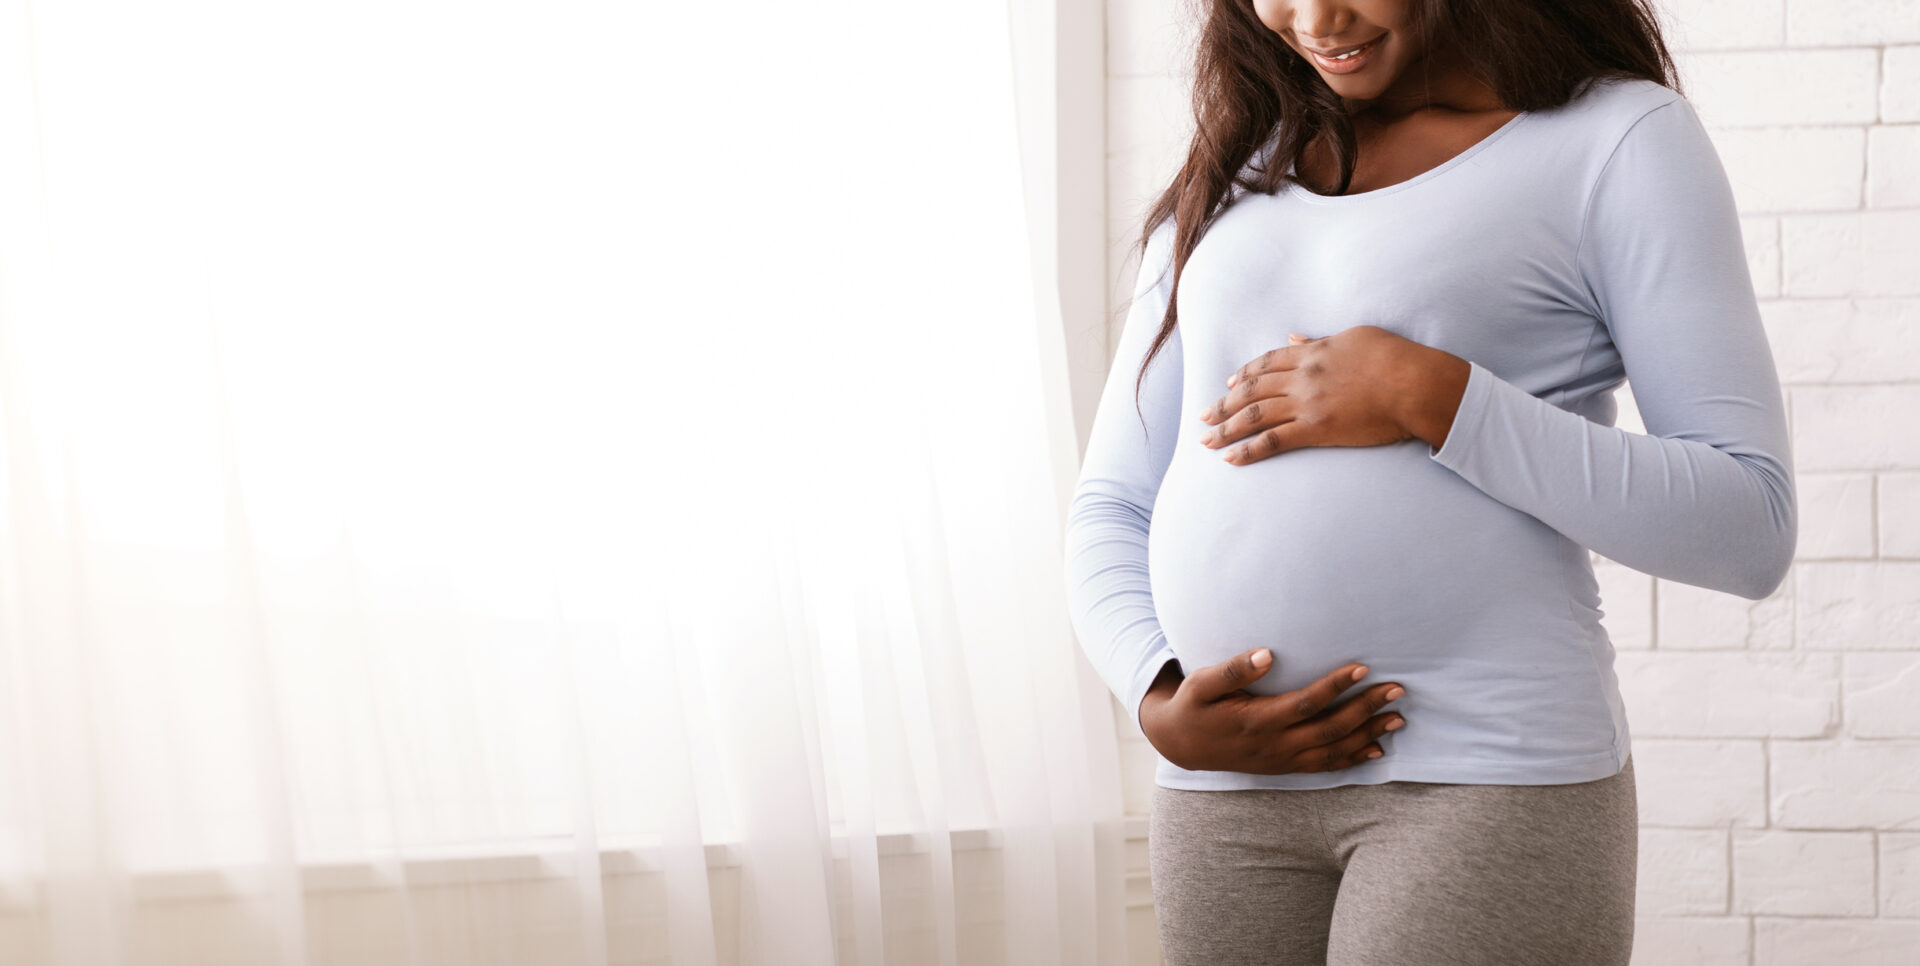 تھالیڈومائڈ کو ٹیراٹجن کا درجہ دیا جاتا ہے اور جب حاملہ خواتین کے ذریعہ لیا جاتا ہے تو وہ پیدائشی نقائص کا سبب بنتا ہے